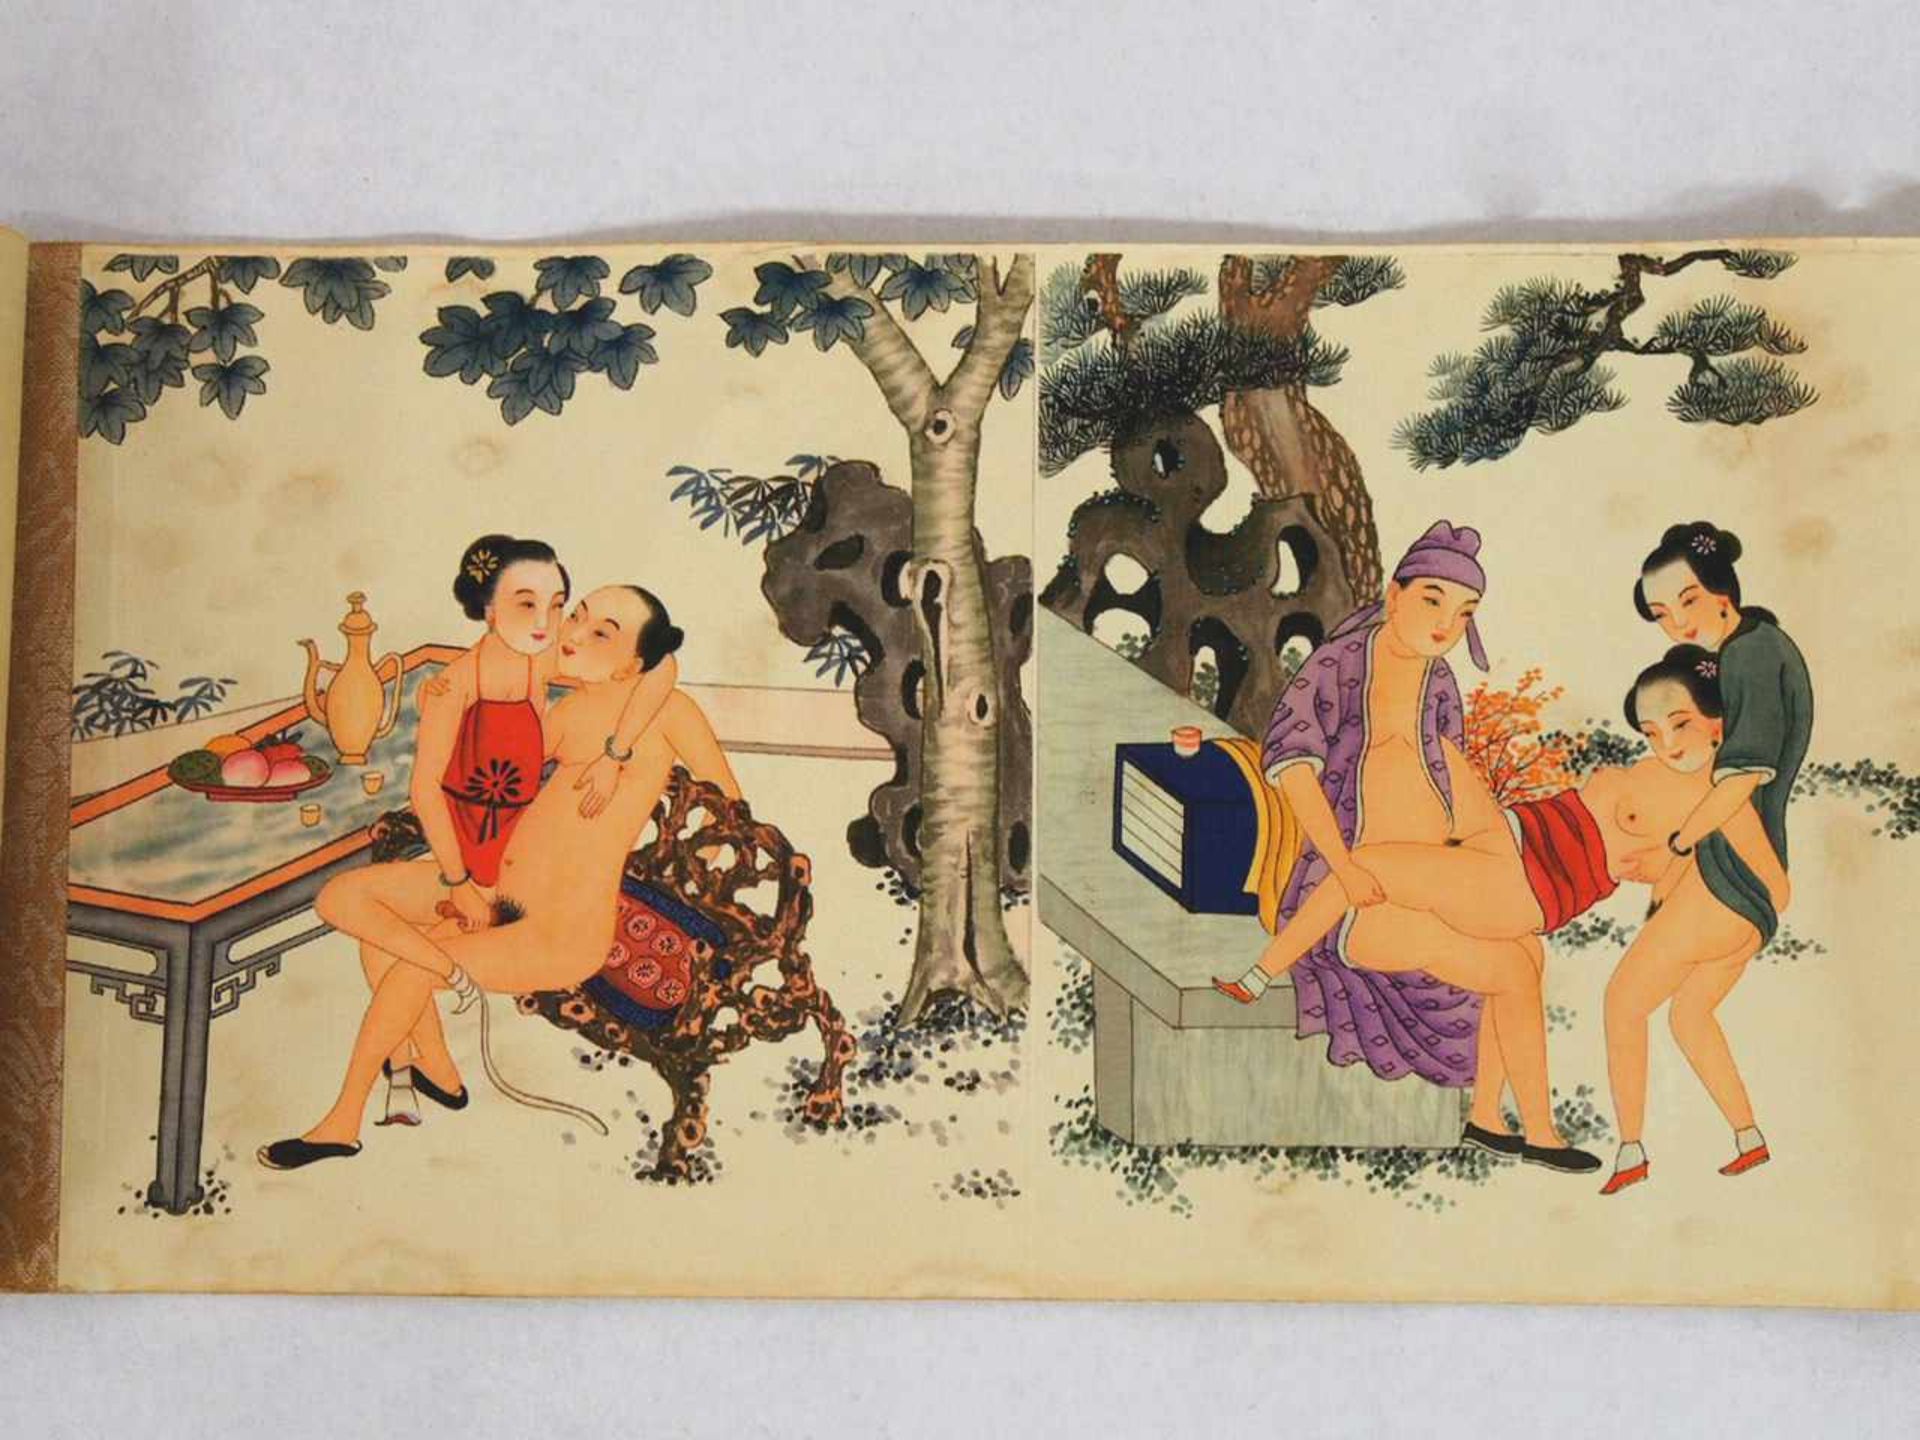 Bilderolle mit 10 erotischen SzenenAquarell auf Papier, China 19. Jahrhundert, 15 x 135 cm- - -25.00 - Image 2 of 2